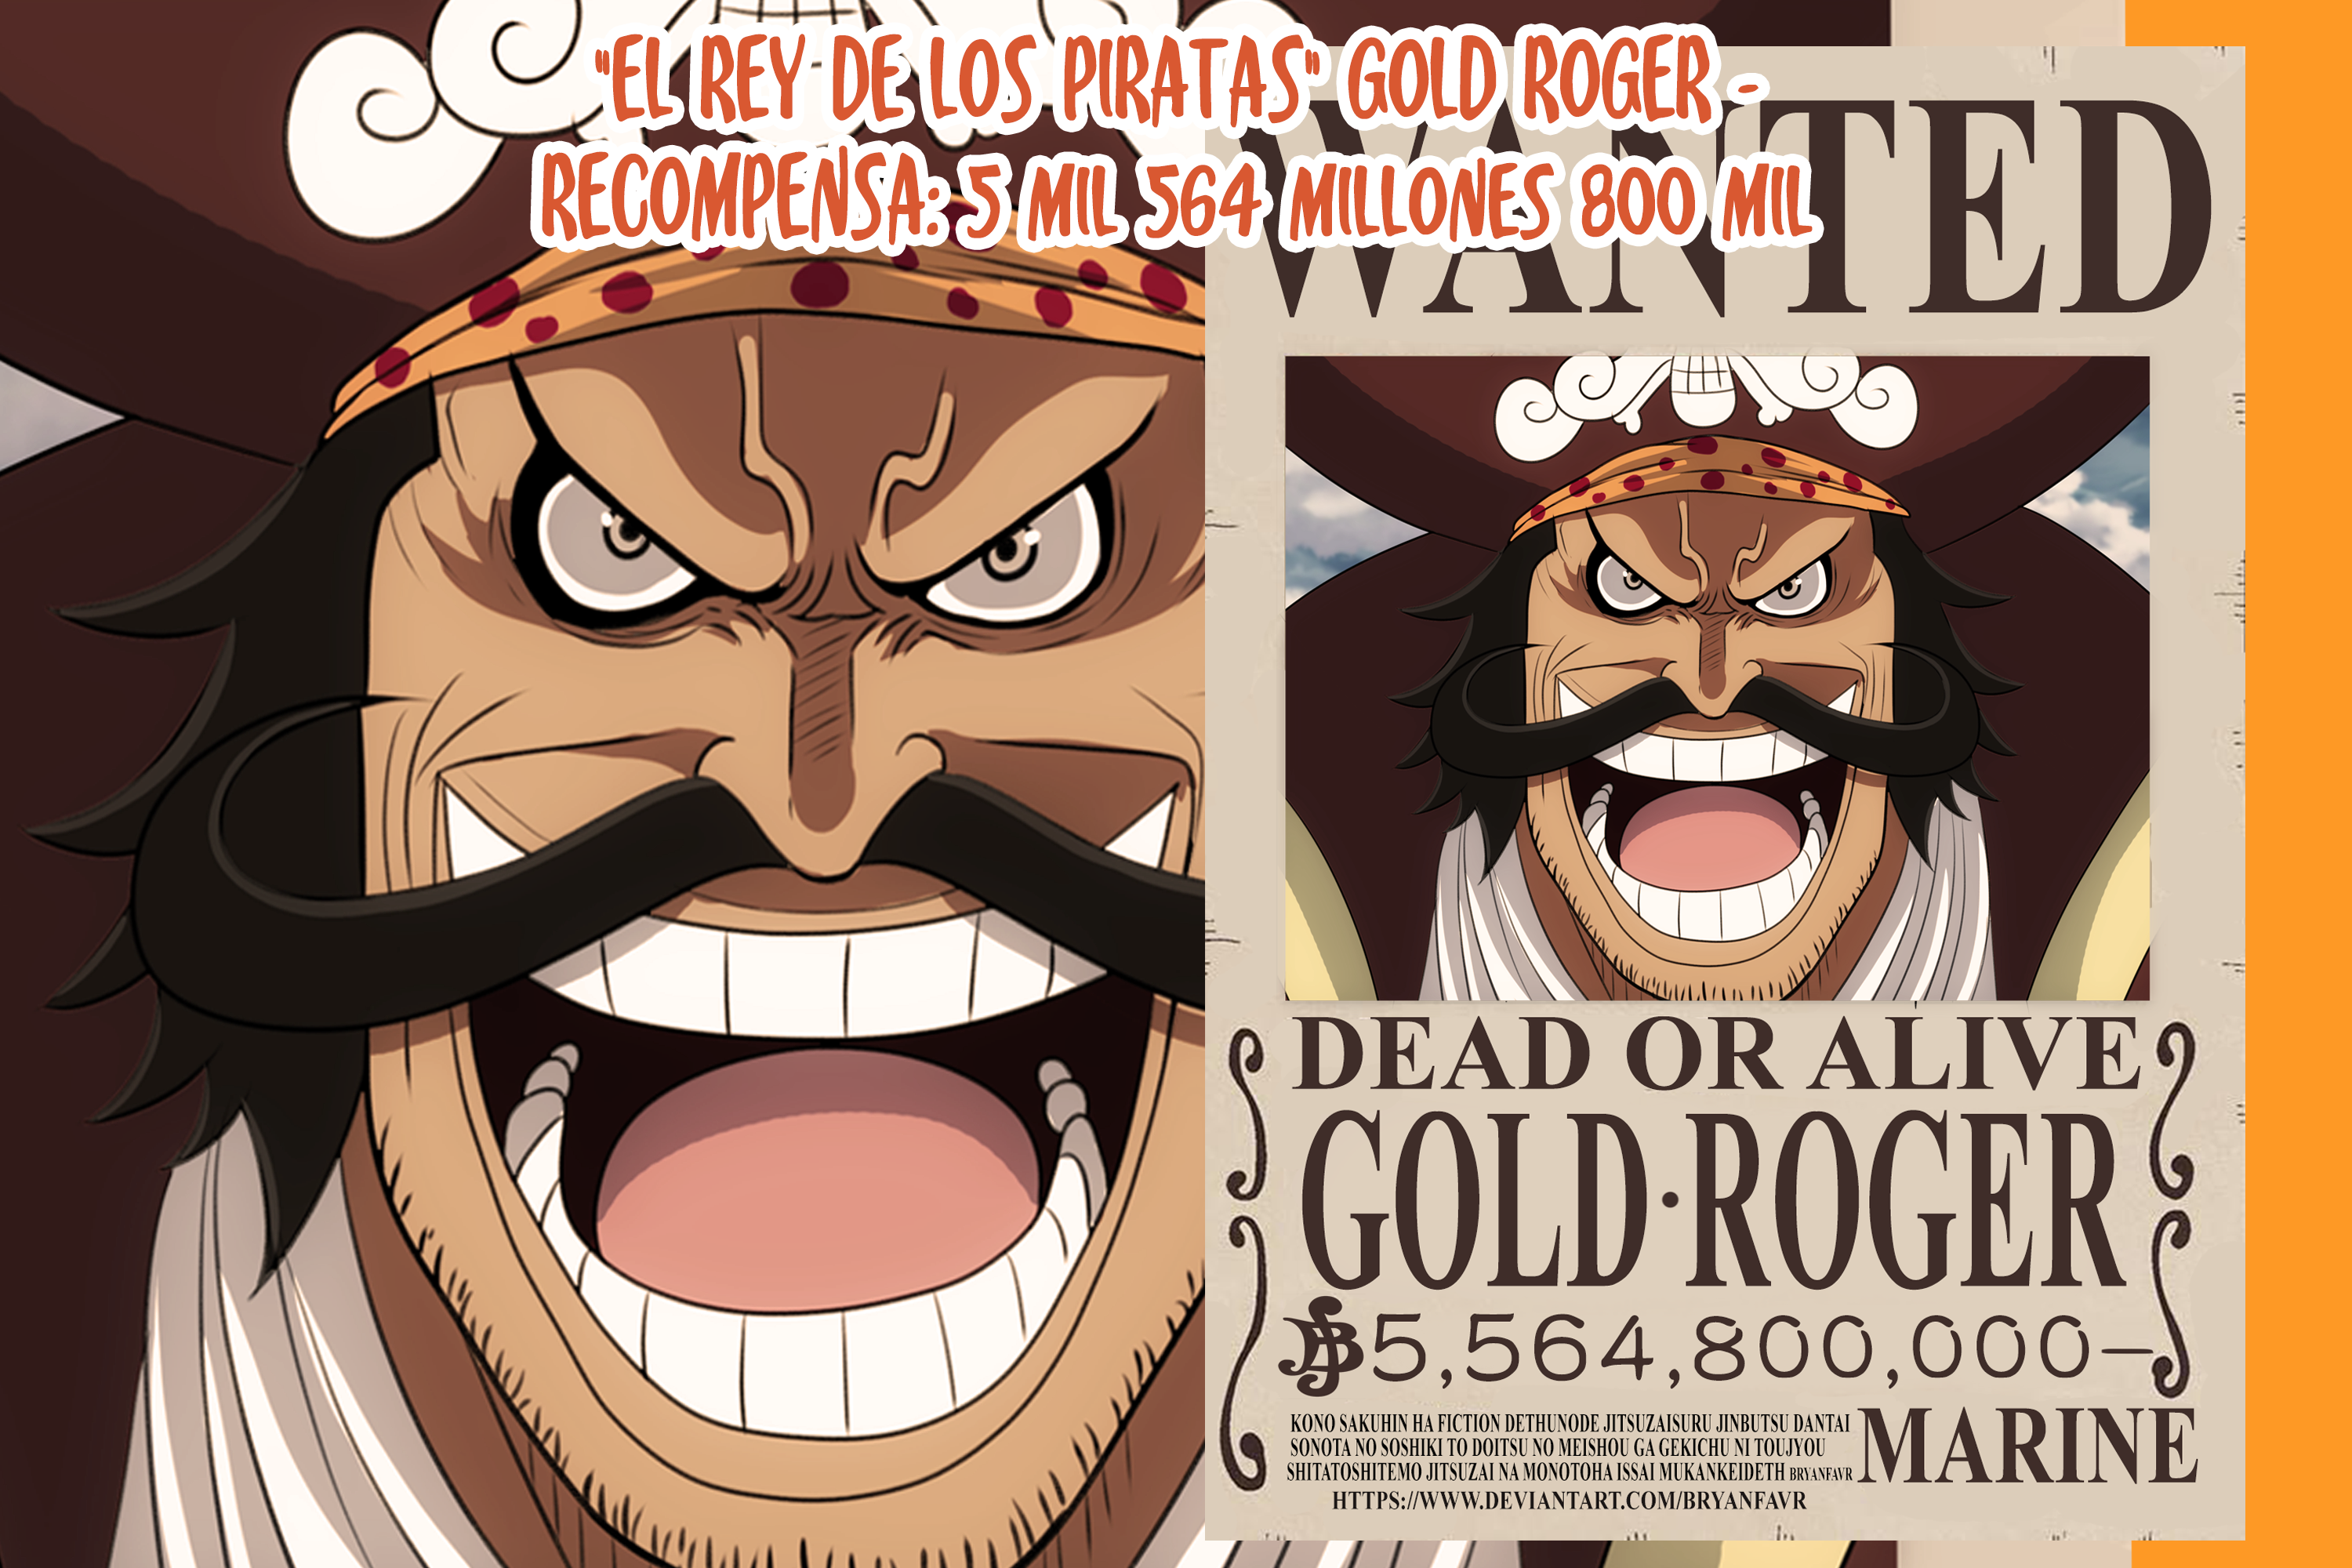 Gol D. Roger // One Piece cap. 957 by goldenhans on DeviantArt